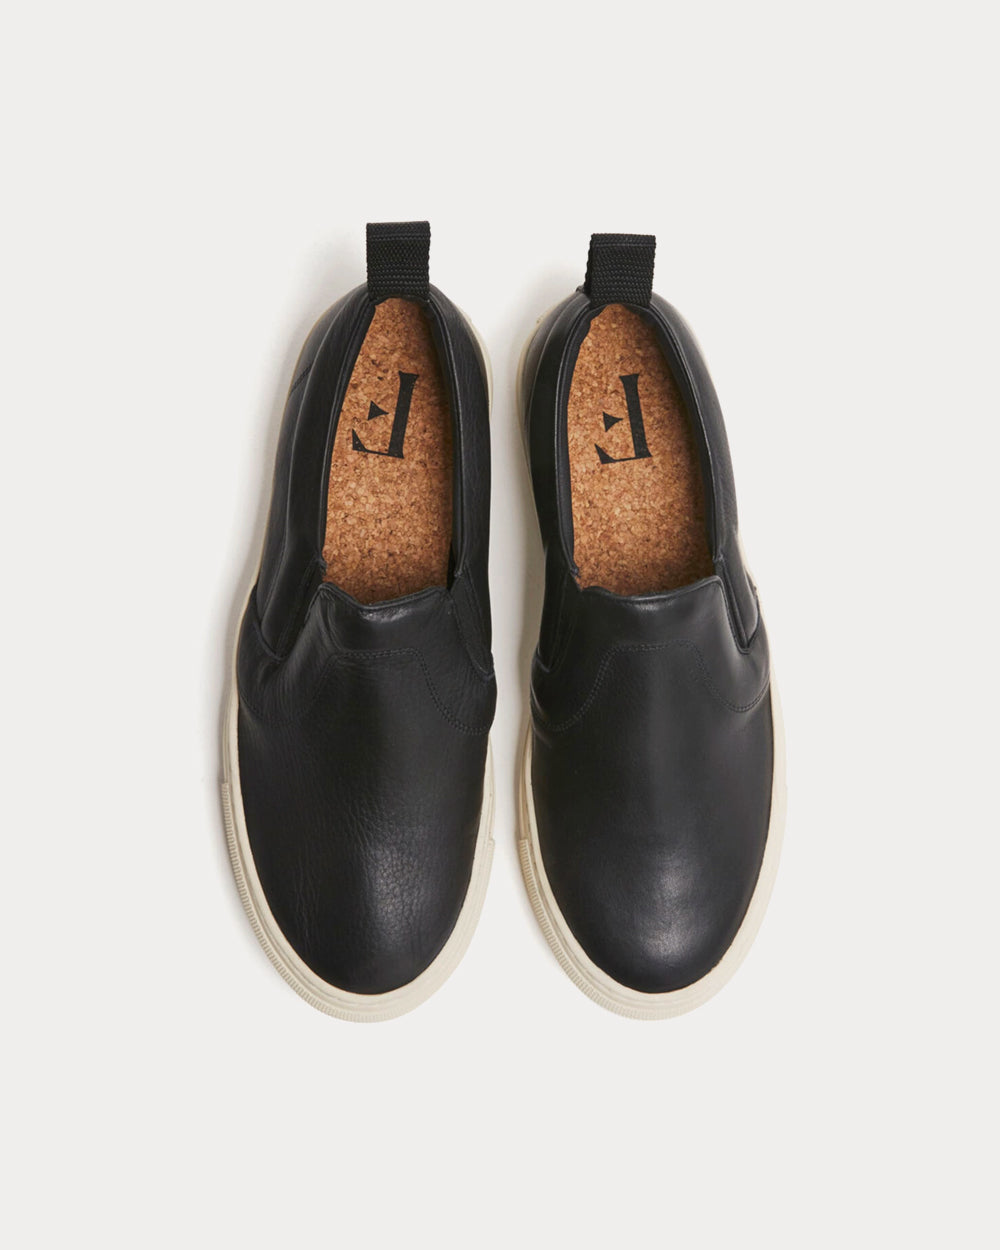 Flattered - Haga Leather Black Slip On Sneakers